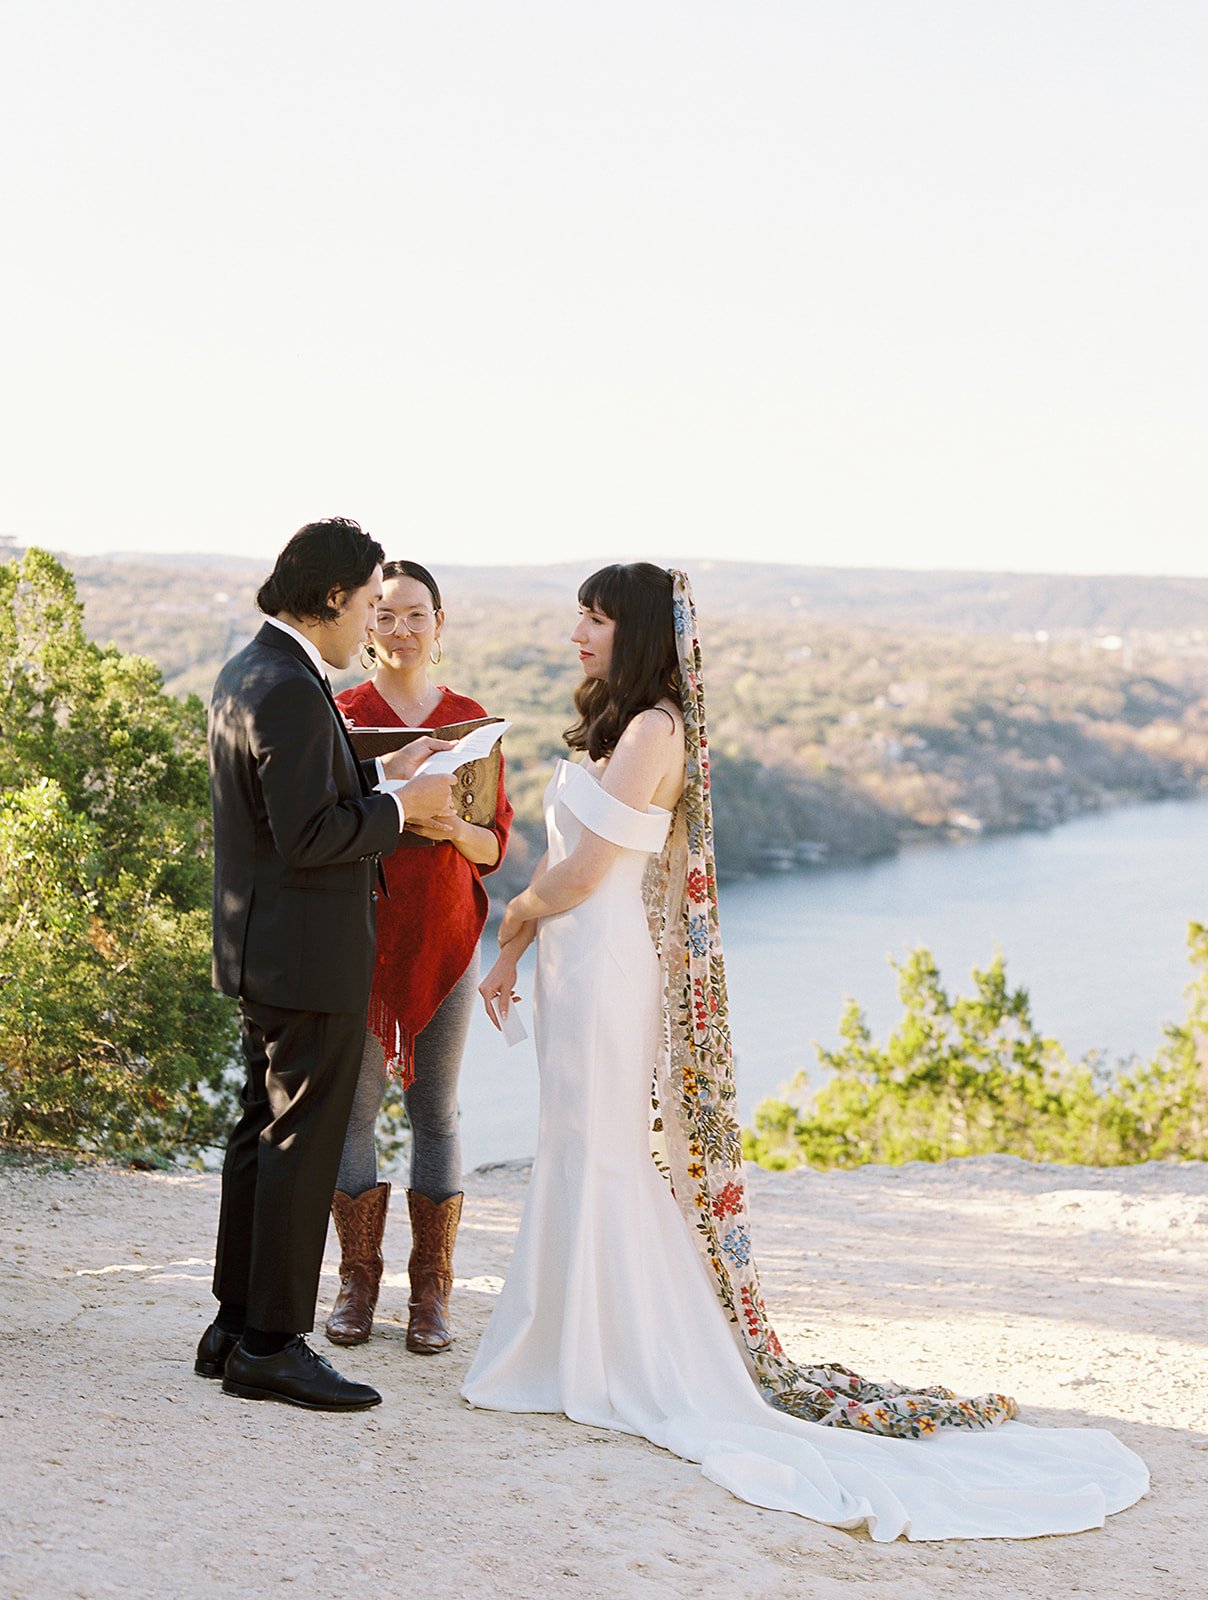 Best-Austin-Wedding-Photographers-Elopement-Film-35mm-Asheville-Santa-Barbara-Laguna-Gloria-4.jpg